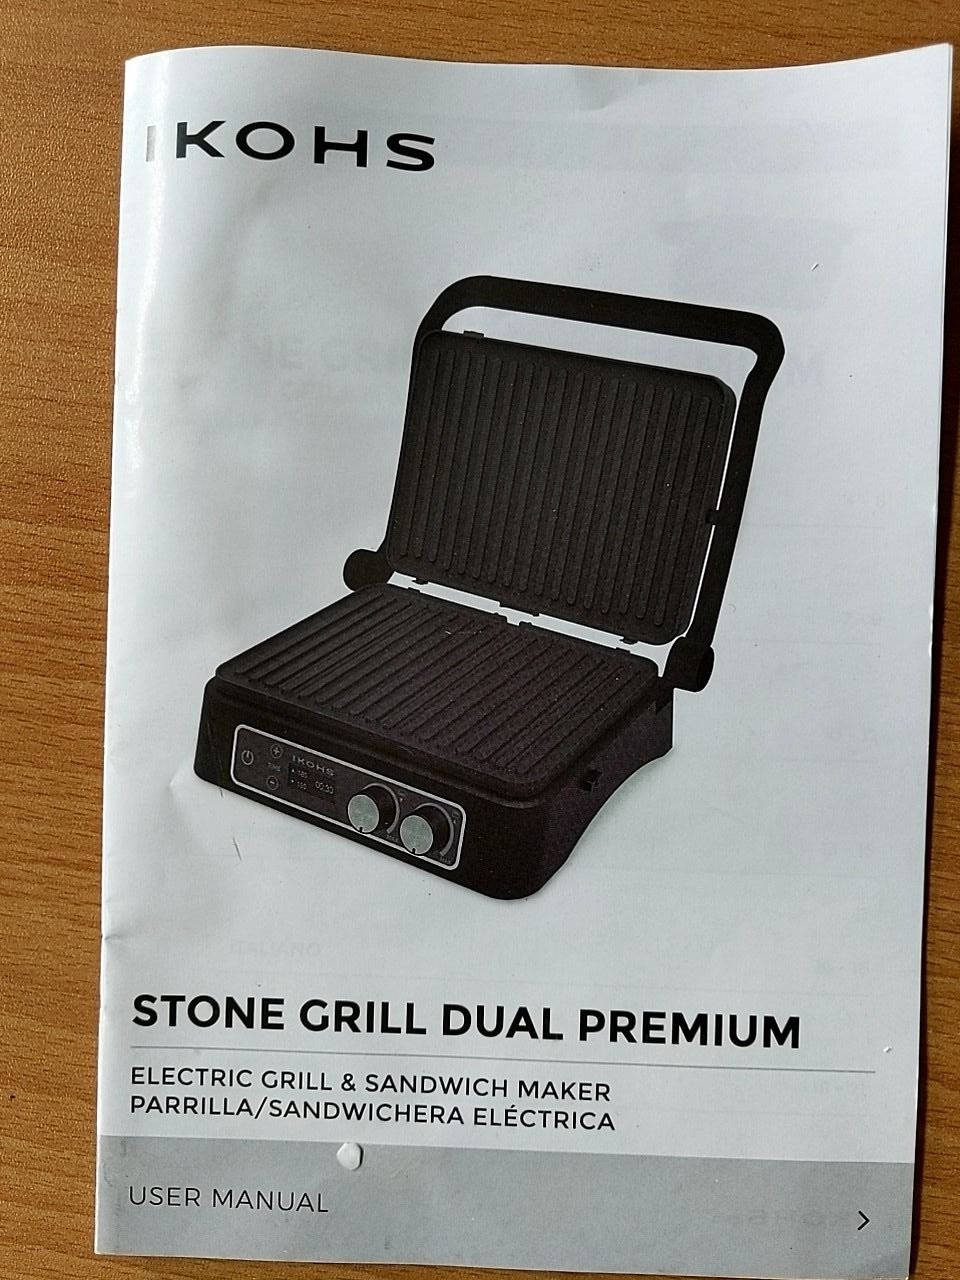 Kontaktní gril (záruka 12. měs.) Ikohs Stone Grill Dual Pro